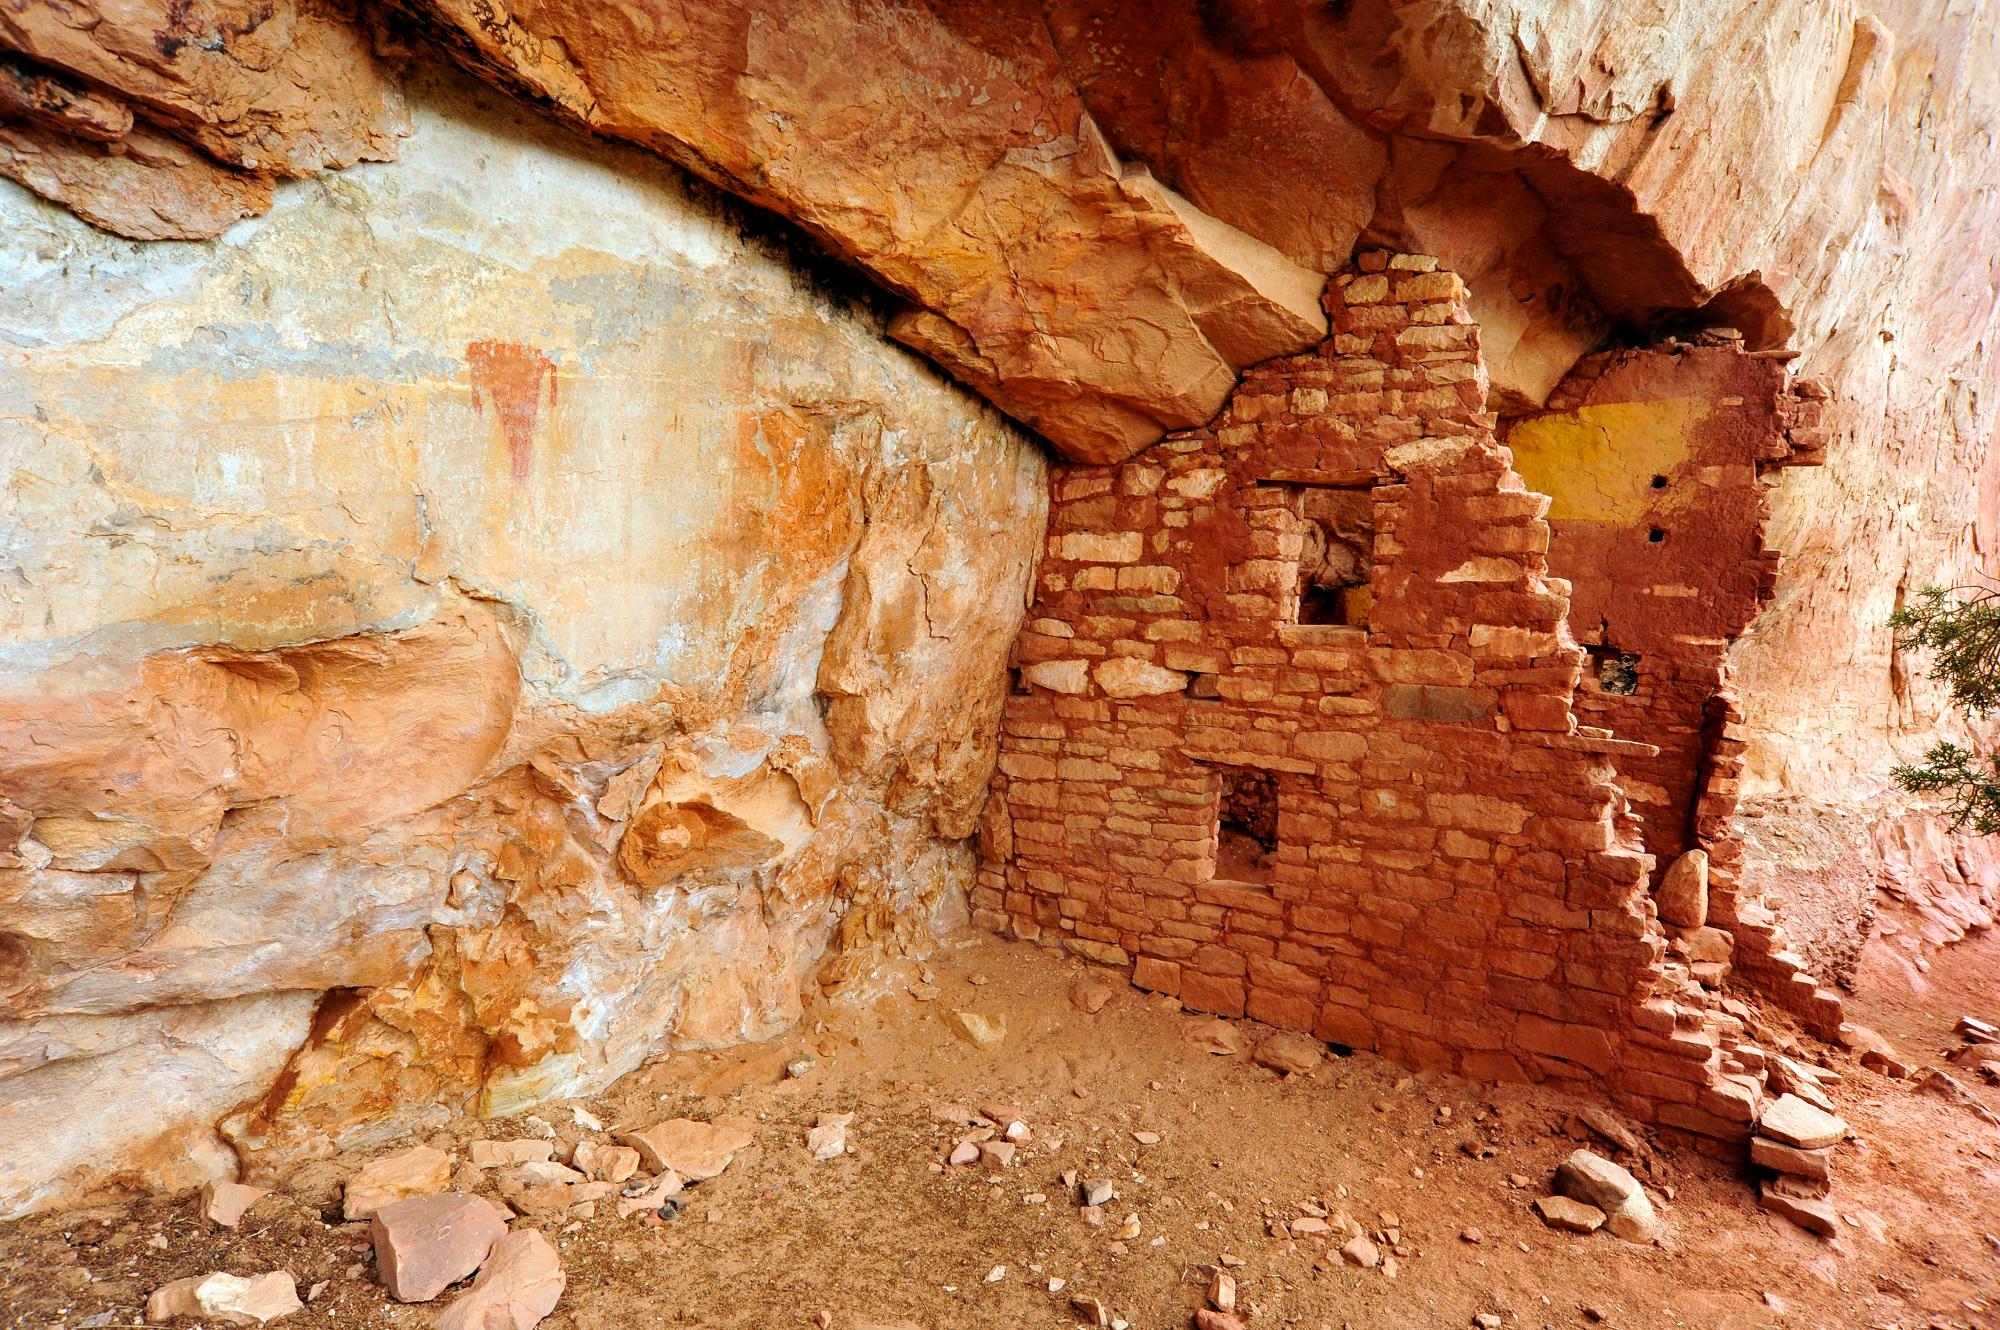 Fragment jednej z osad starożytnych Indian Pueblo, The Gallery w Kanionie Rock Creek, badana w ramach polskiego projektu w Kolorado (widoczne są kolorowe tynki-murale w jednym z budynków) oraz sztuka naskalna (malowidła)